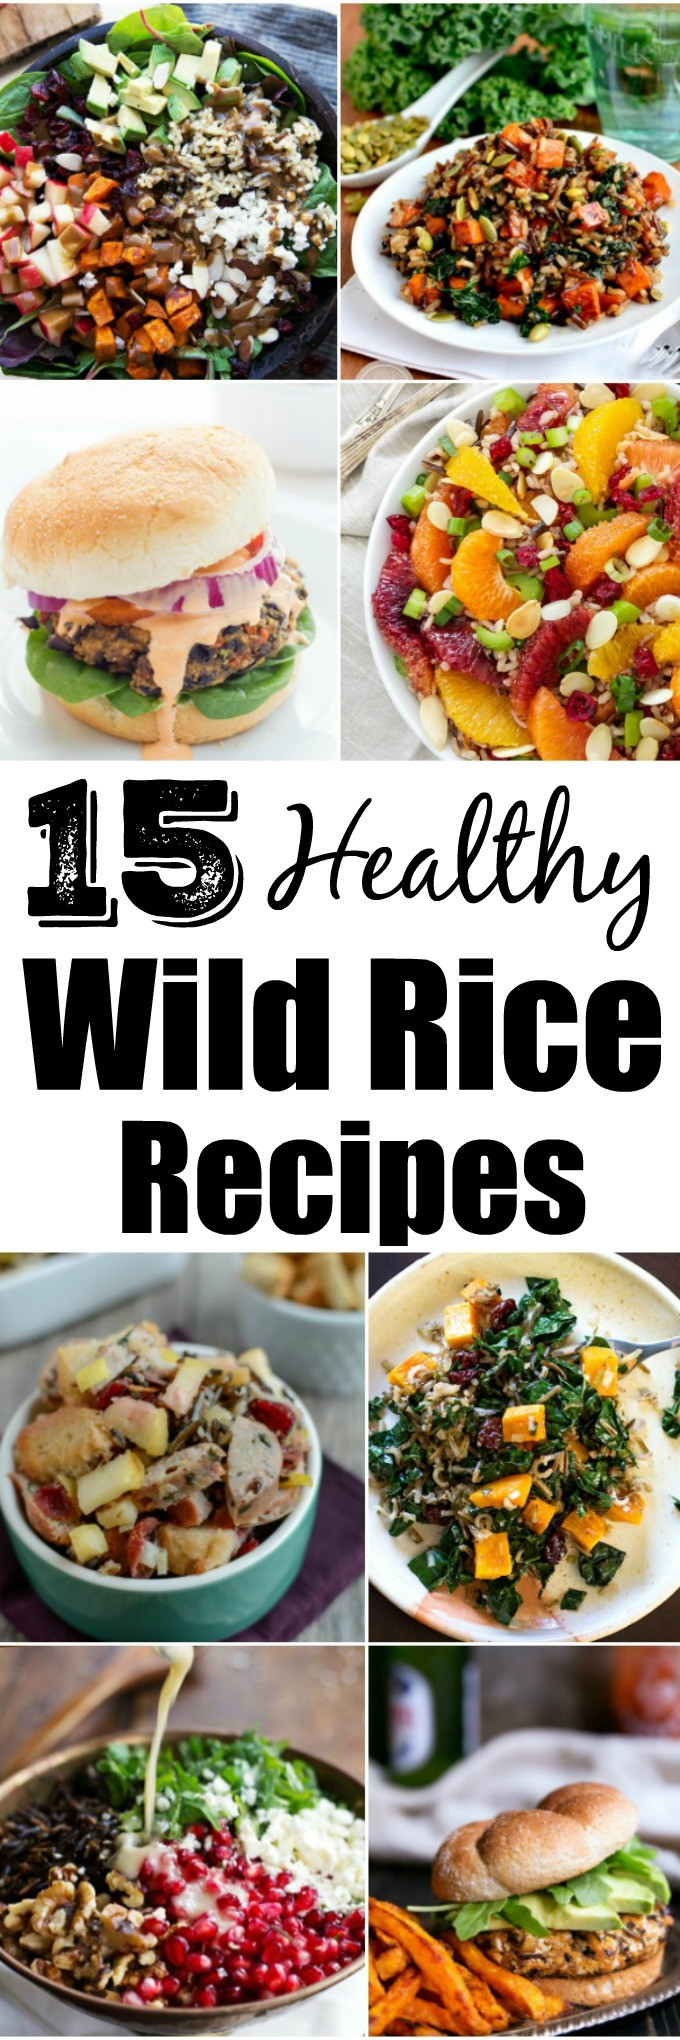 Healthy Wild Rice Recipes
 15 Healthy Wild Rice Recipes